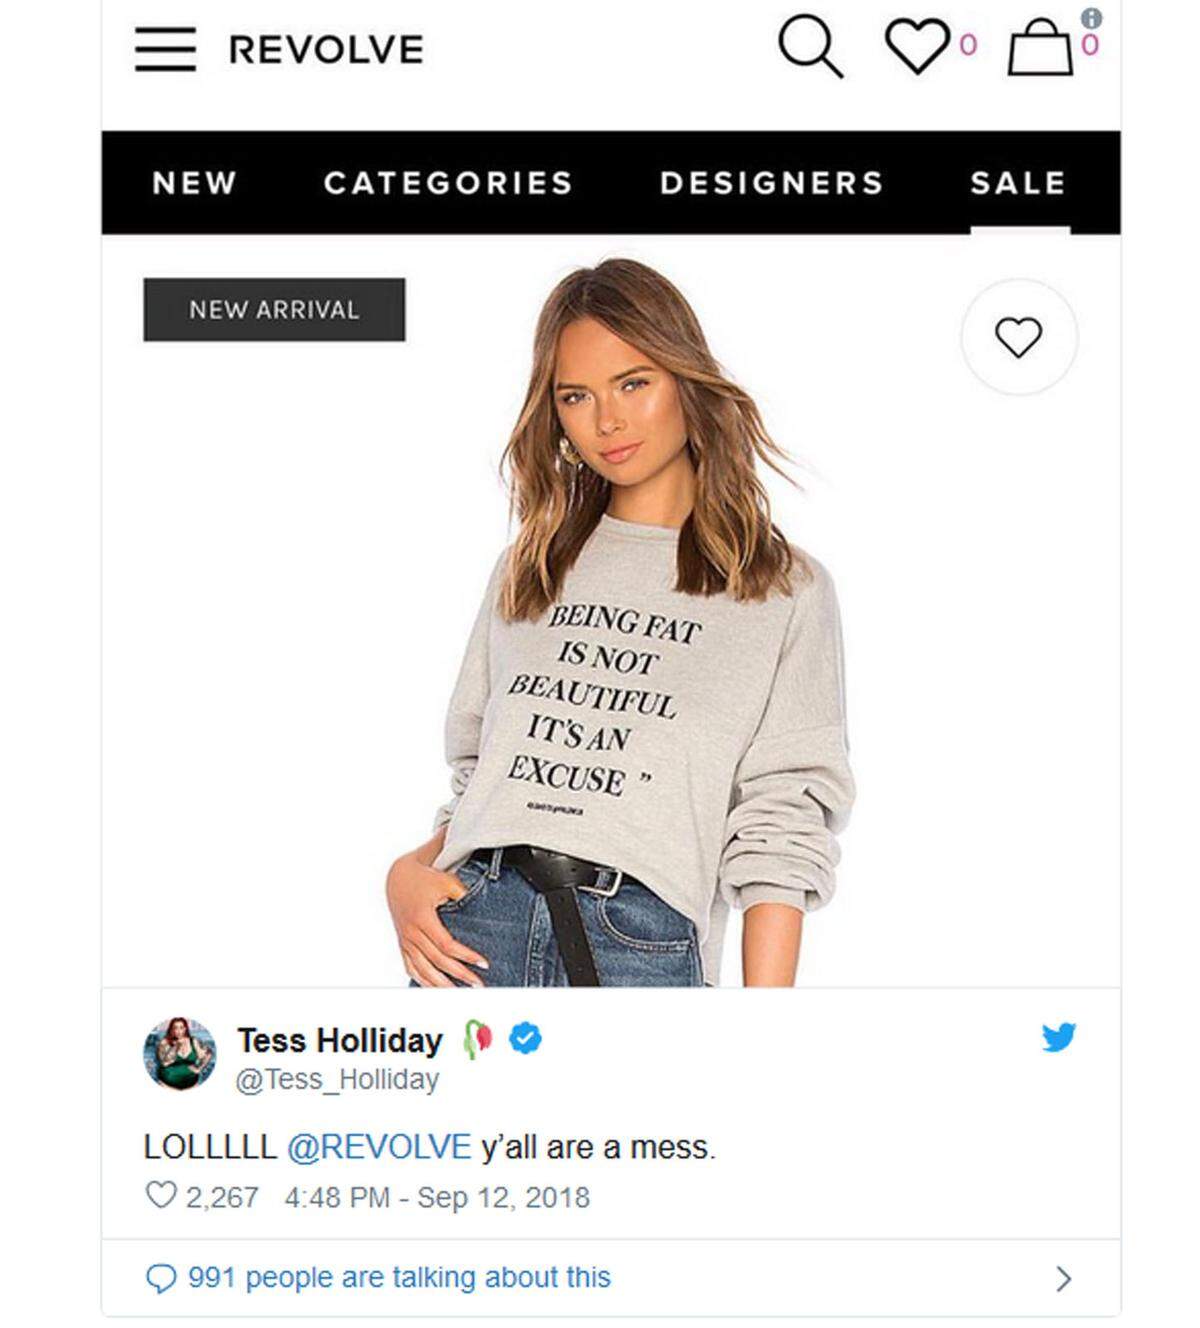 Das Modelabel Revolve verkaufte 2018 einen Pullover mit der Aufschrift "Fett zu sein ist nicht schön, sondern eine Ausrede". Eigentlich sollte es ein Zeichen gegen Cyber-Bullying sein - das verstand nur niemand. Im Web war die Aufregung groß.